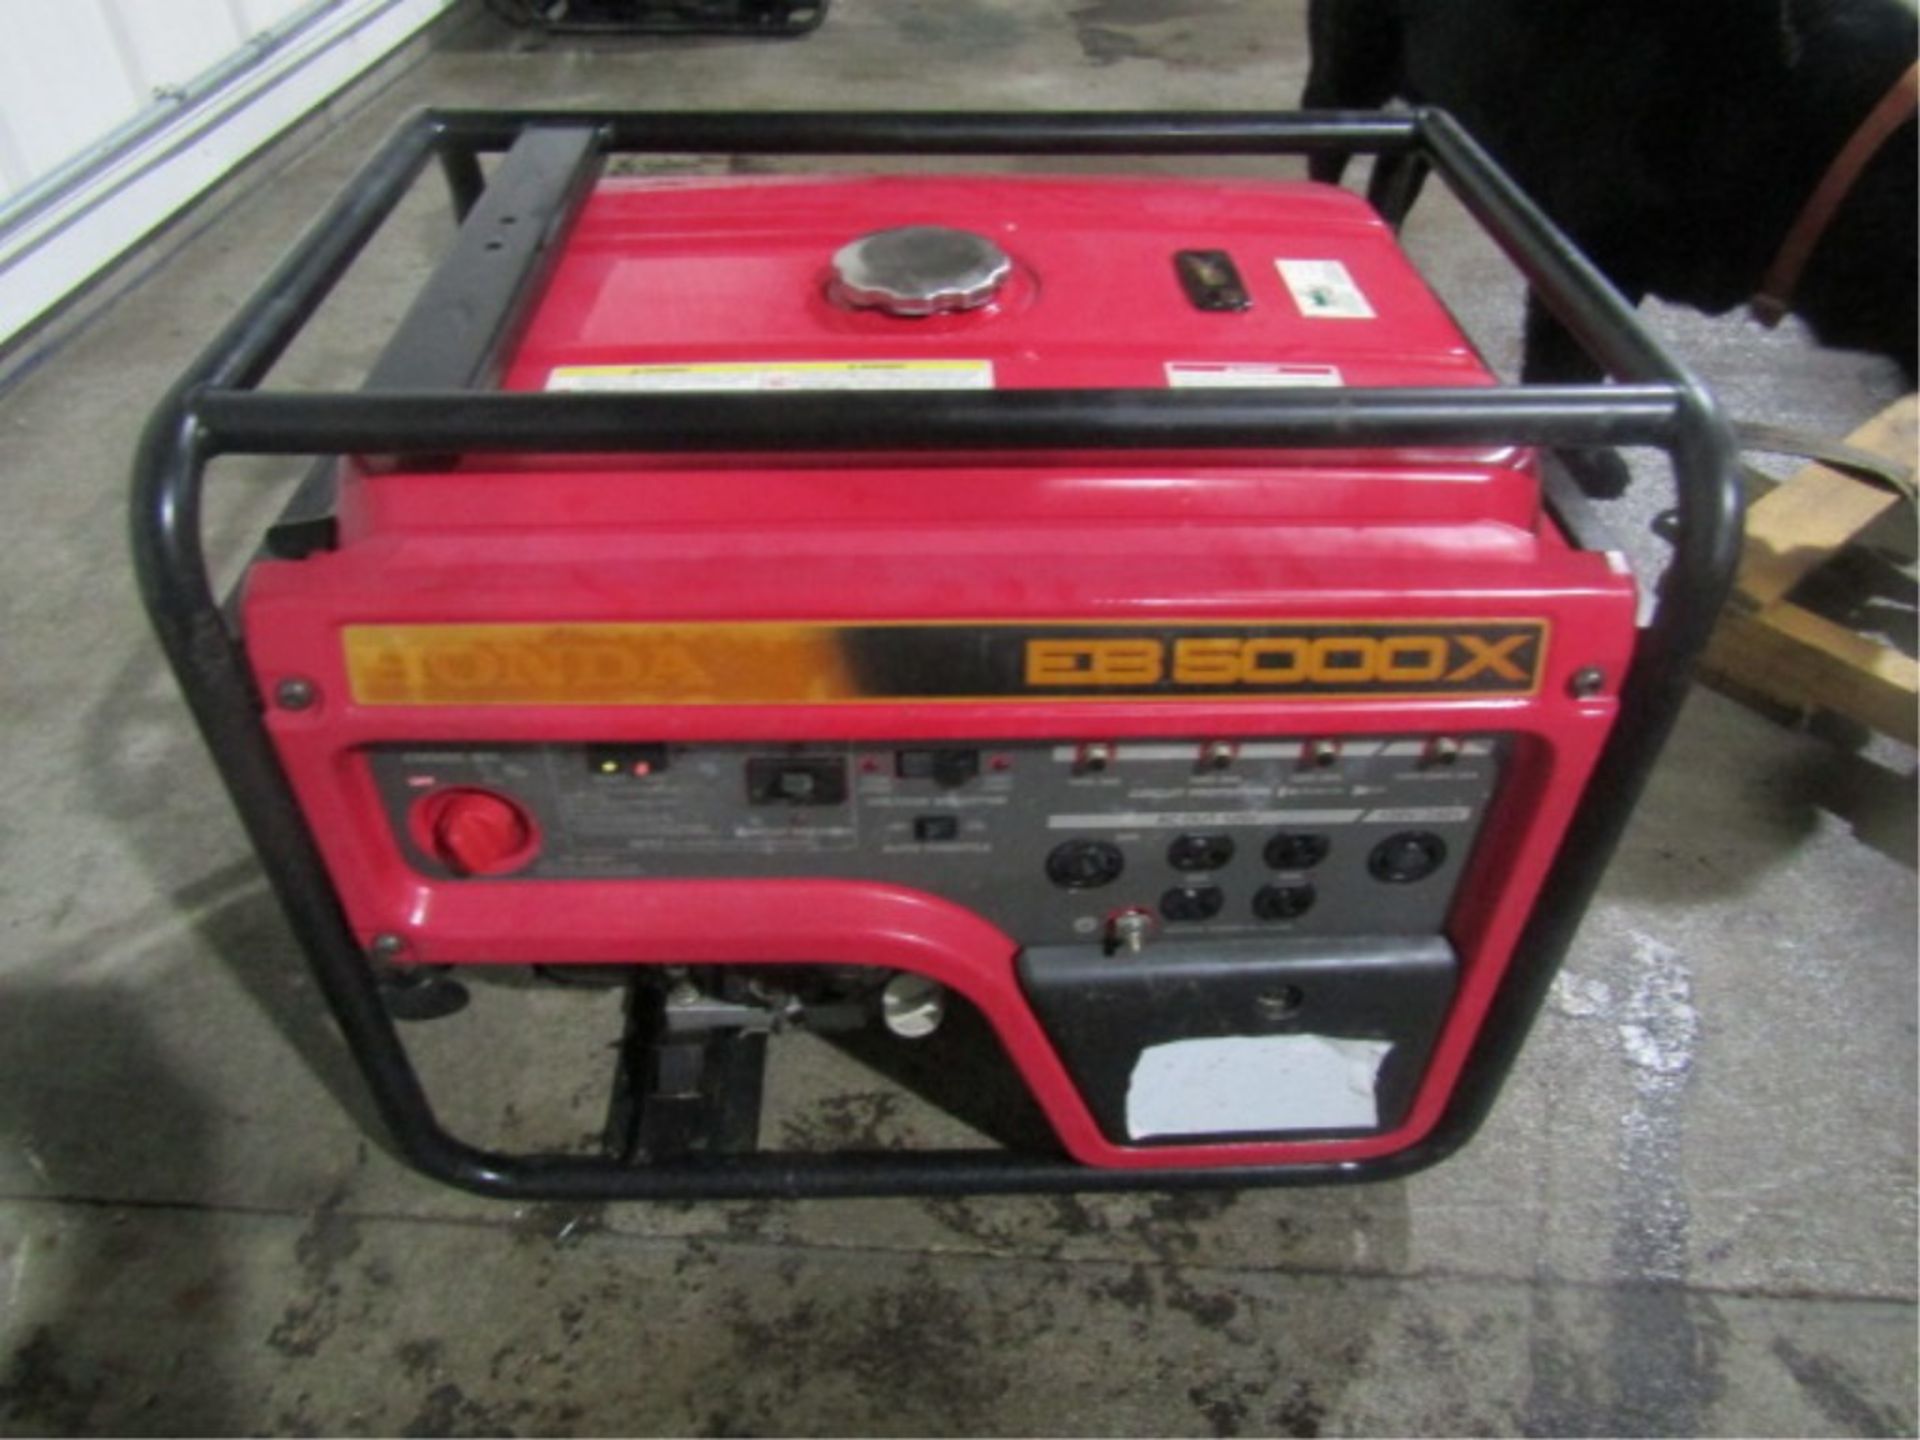 Honda EB 5000X Gas 120/240V Generator - Image 2 of 5